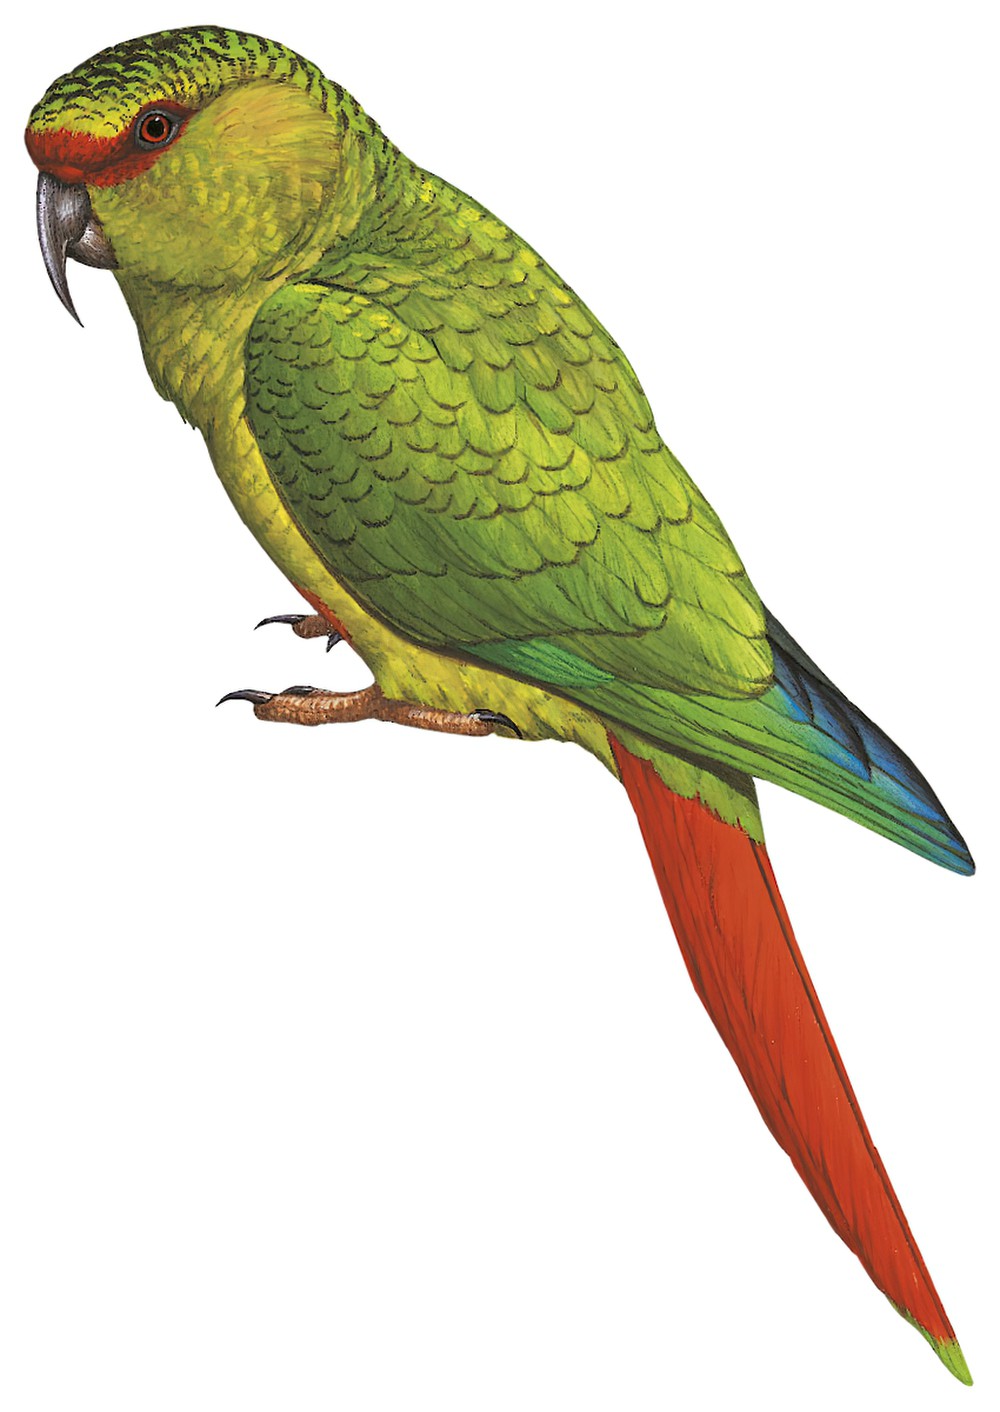 Slender-billed Parakeet / Enicognathus leptorhynchus